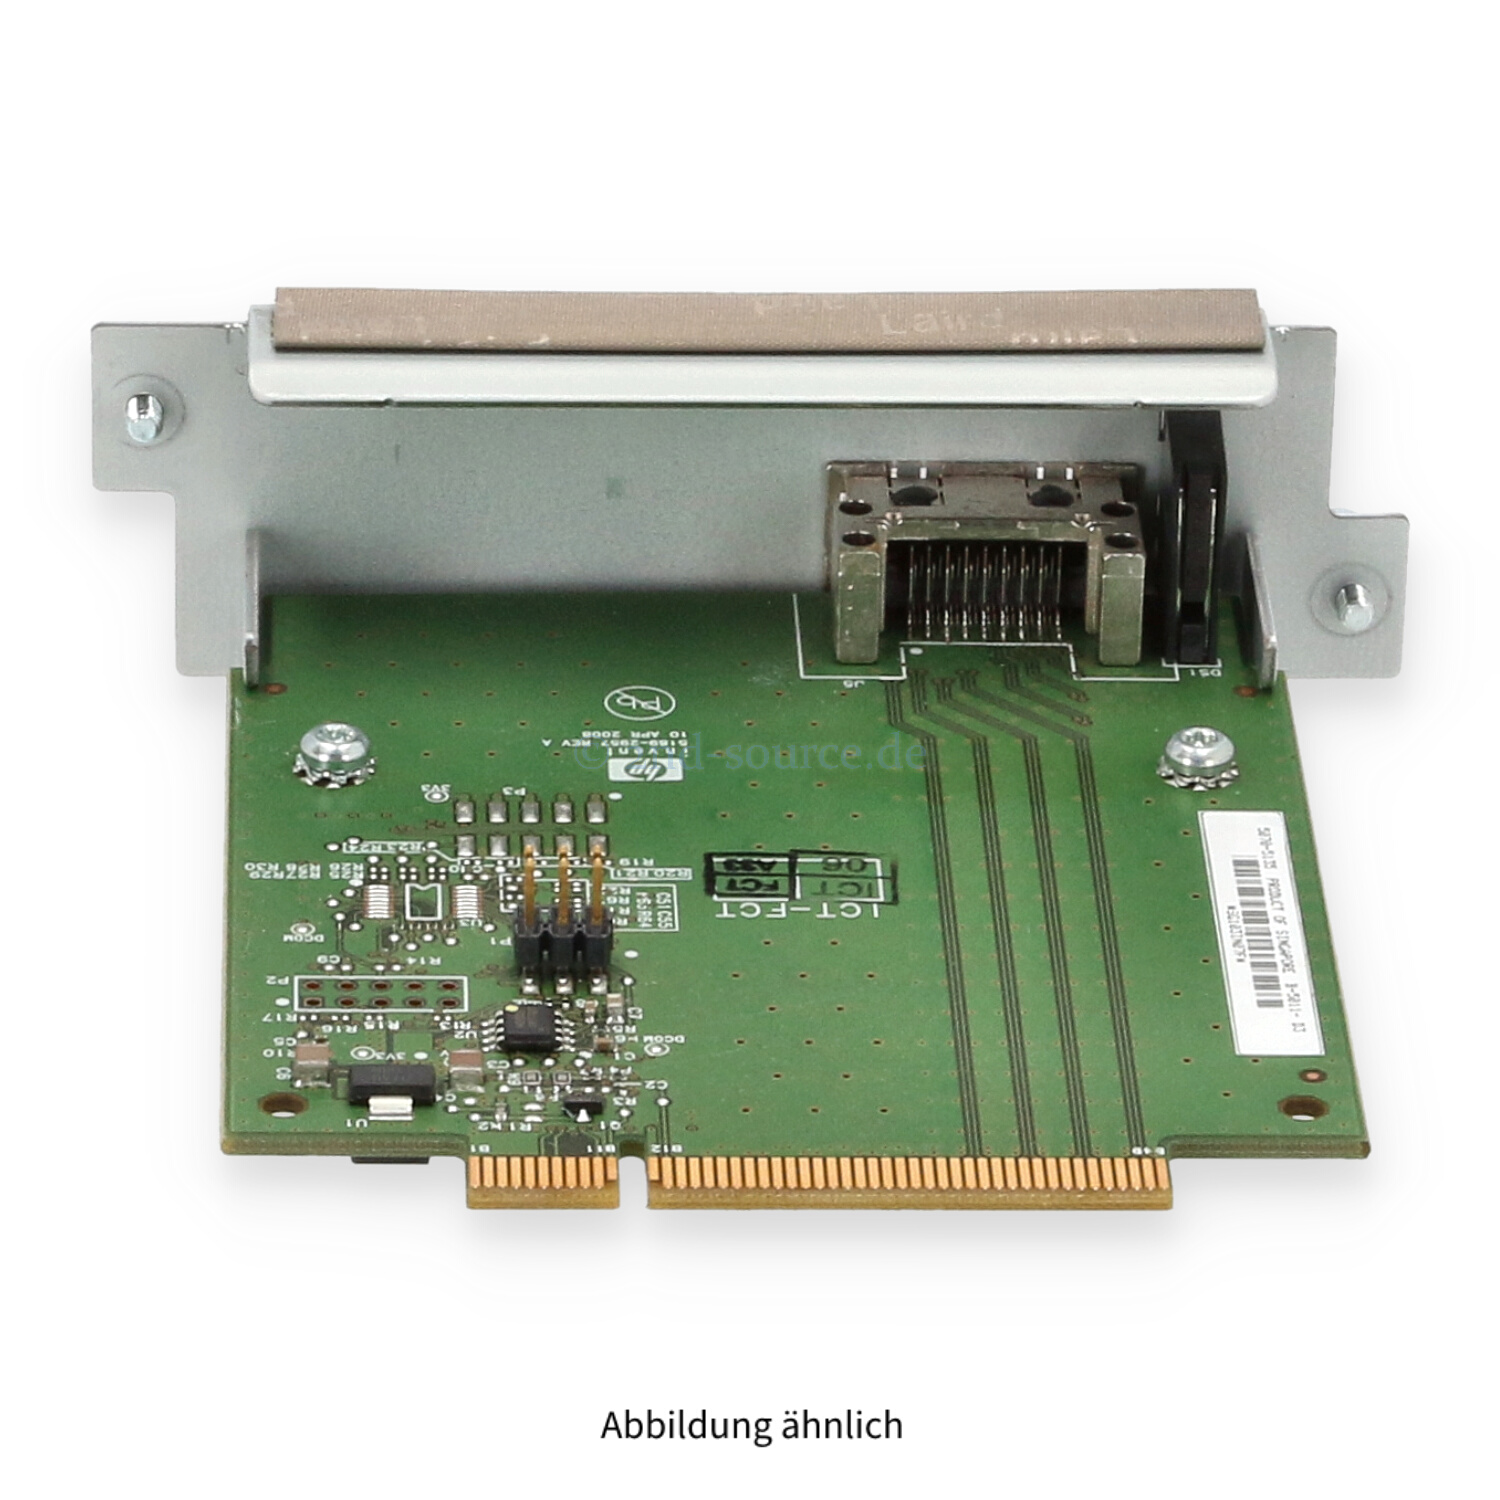 HPE ProCurve 1x CX4 10GbE Interconnect Module 5070-5135 J9165-61001